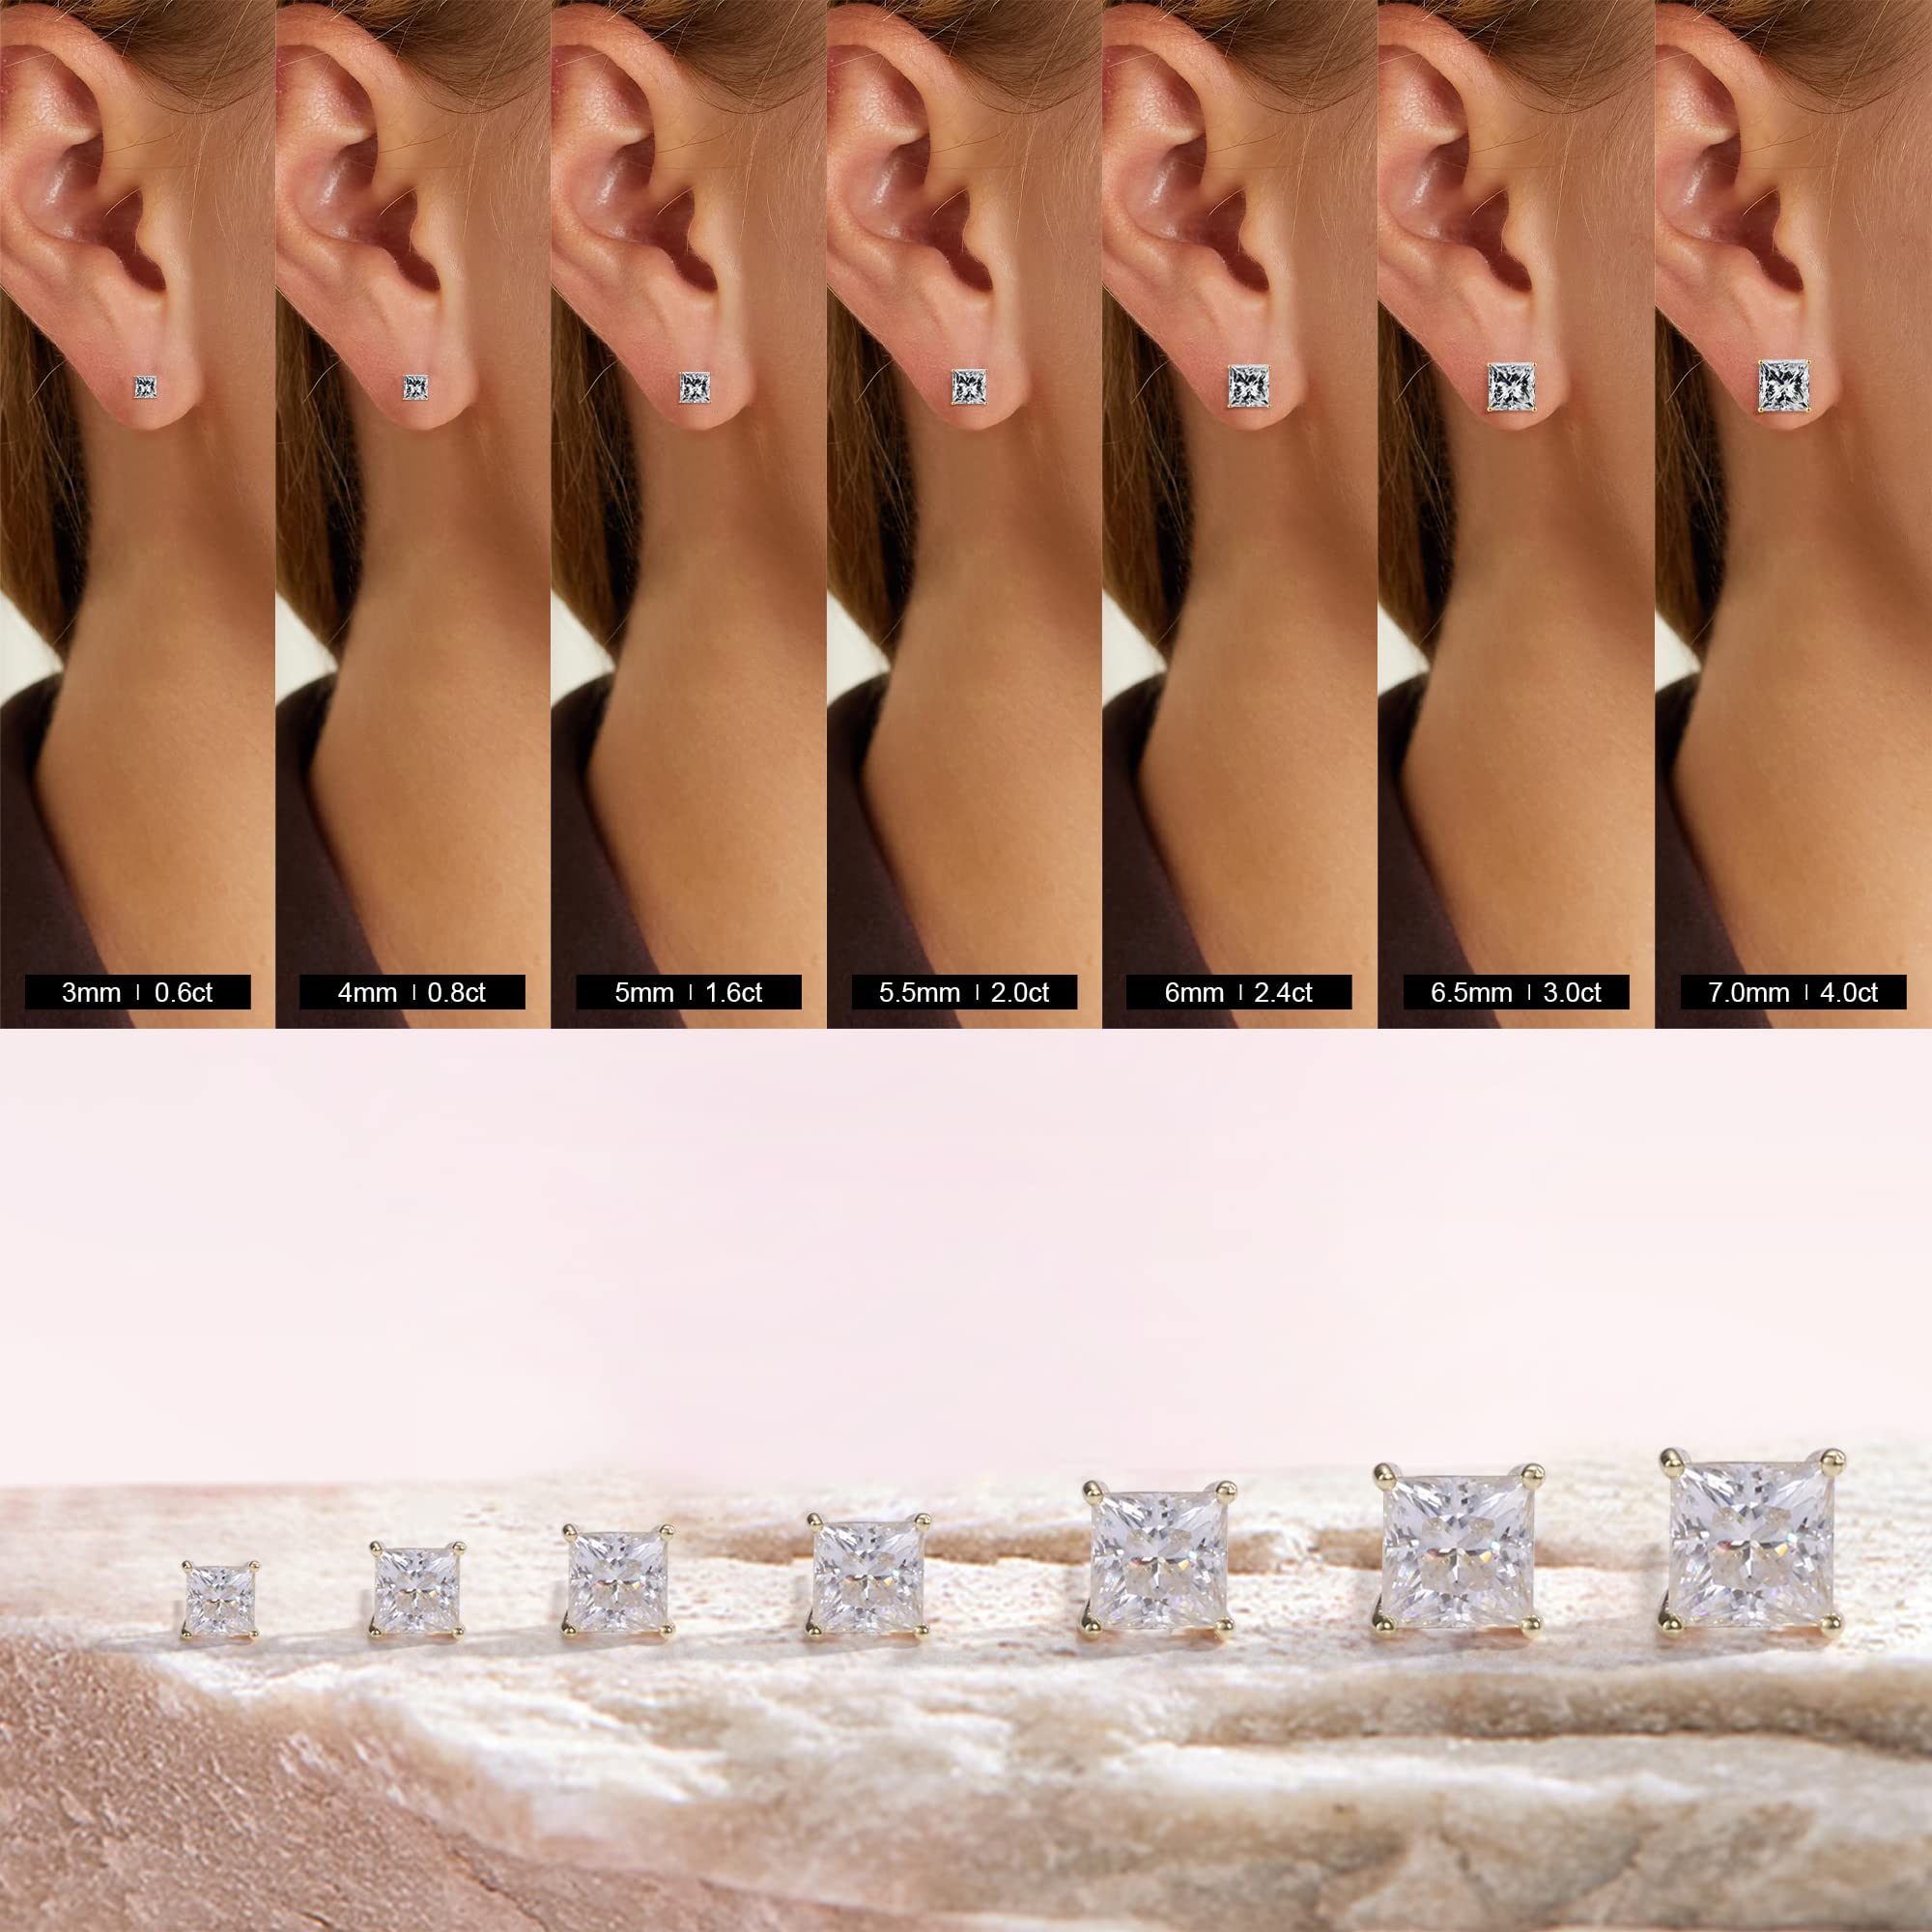 SMILEST 0.6-4ct Princess Moissanite Earrings for Women, D Color VVS1 Clarity Lab Created Diamond Earrings 18K White Yellow Rose Gold Vermeil S925 Sterling Silver Moissanite Screw Back Earrings Studs